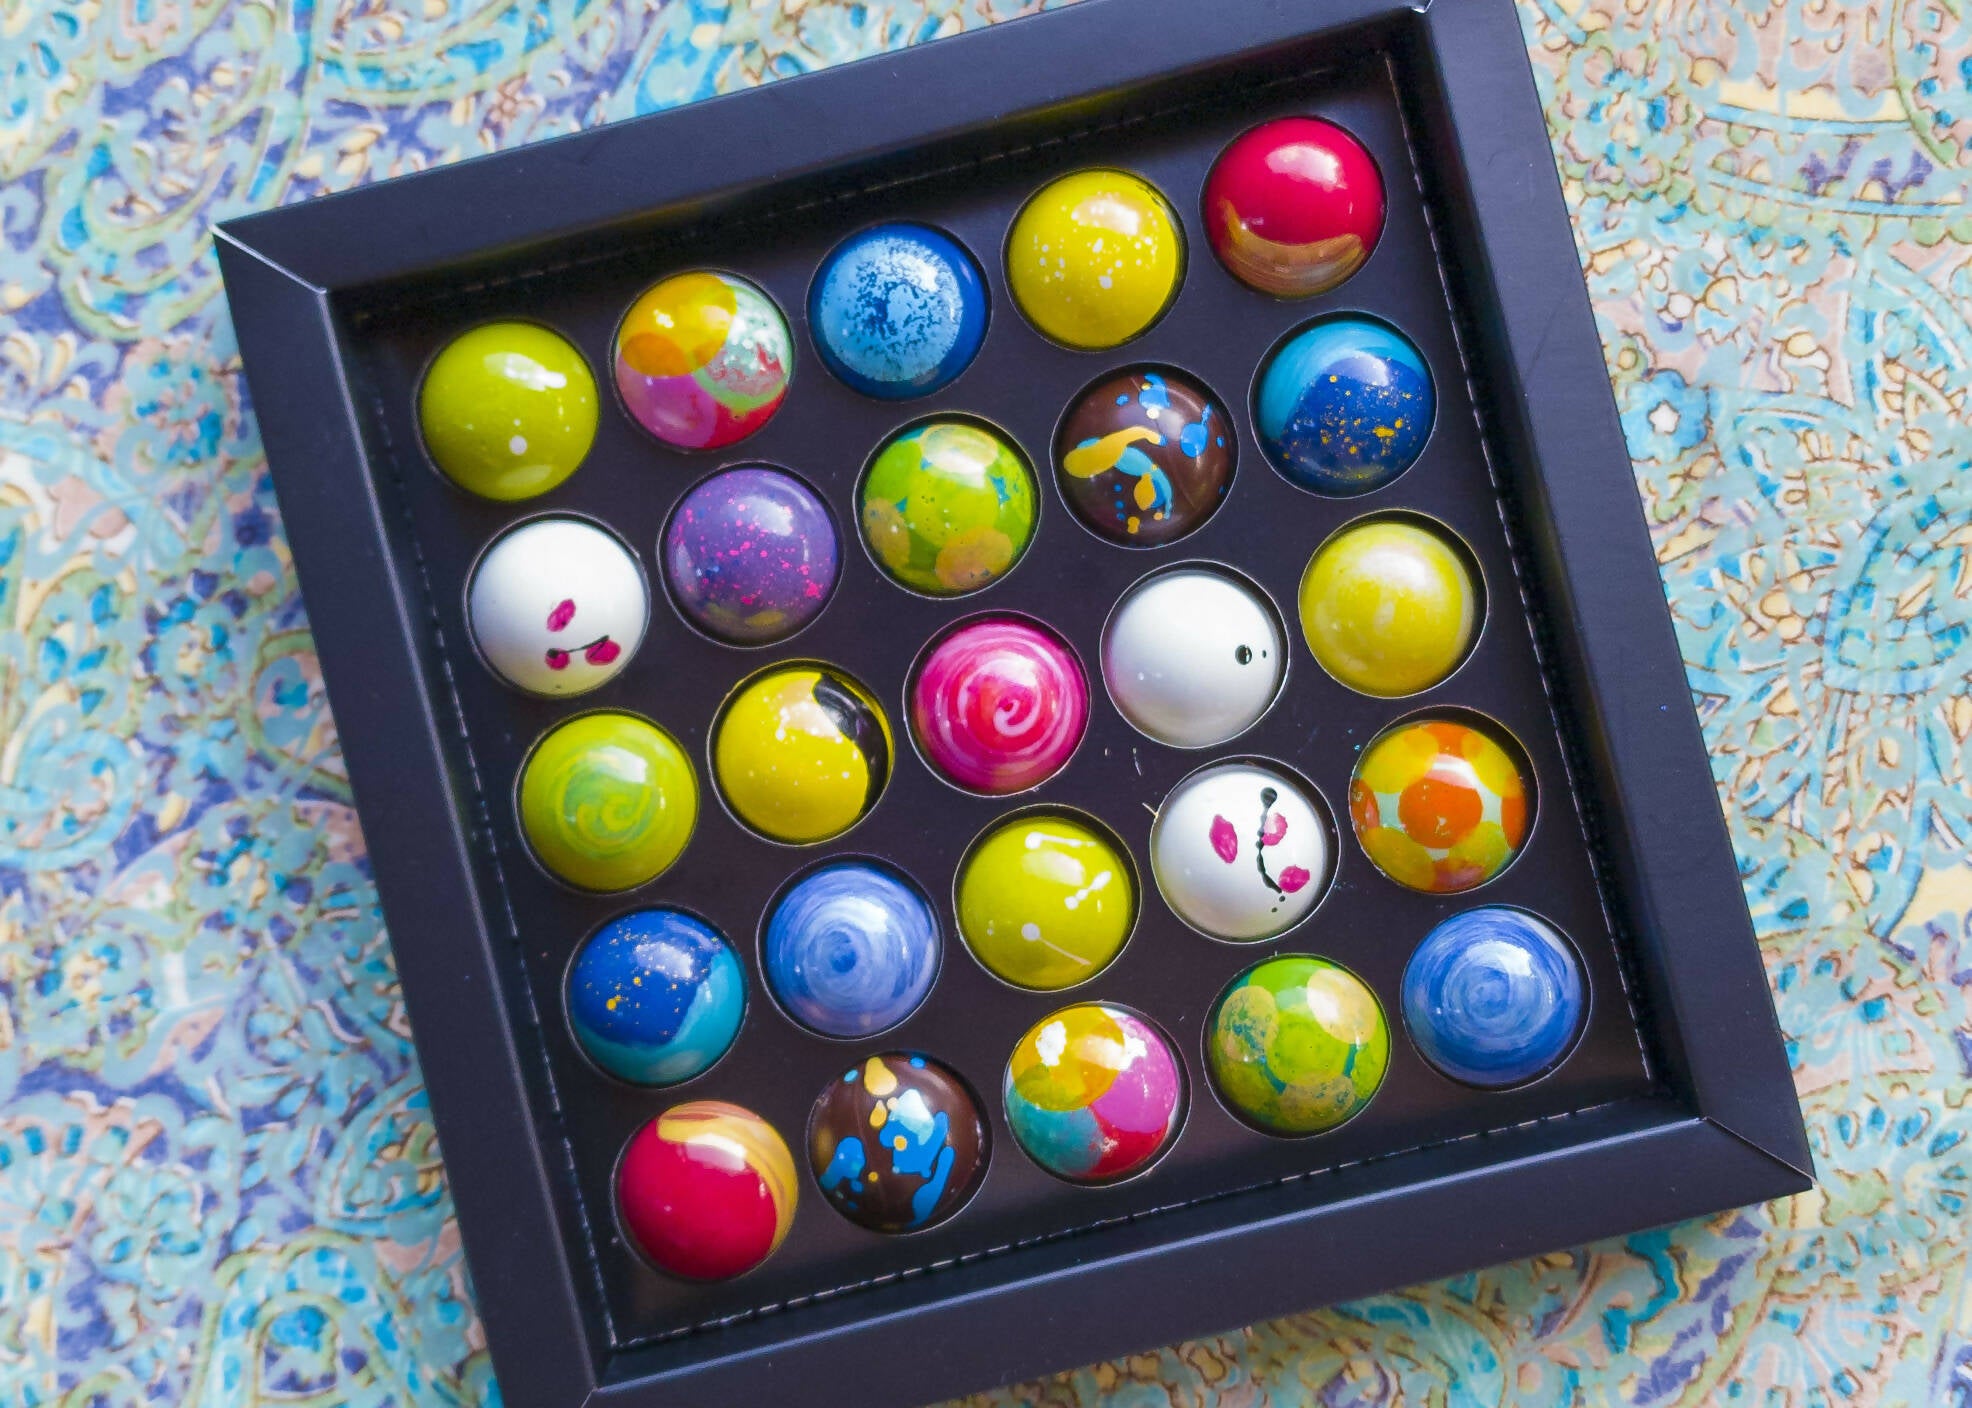 Caja Chocolates "Circo" *25 bombones*